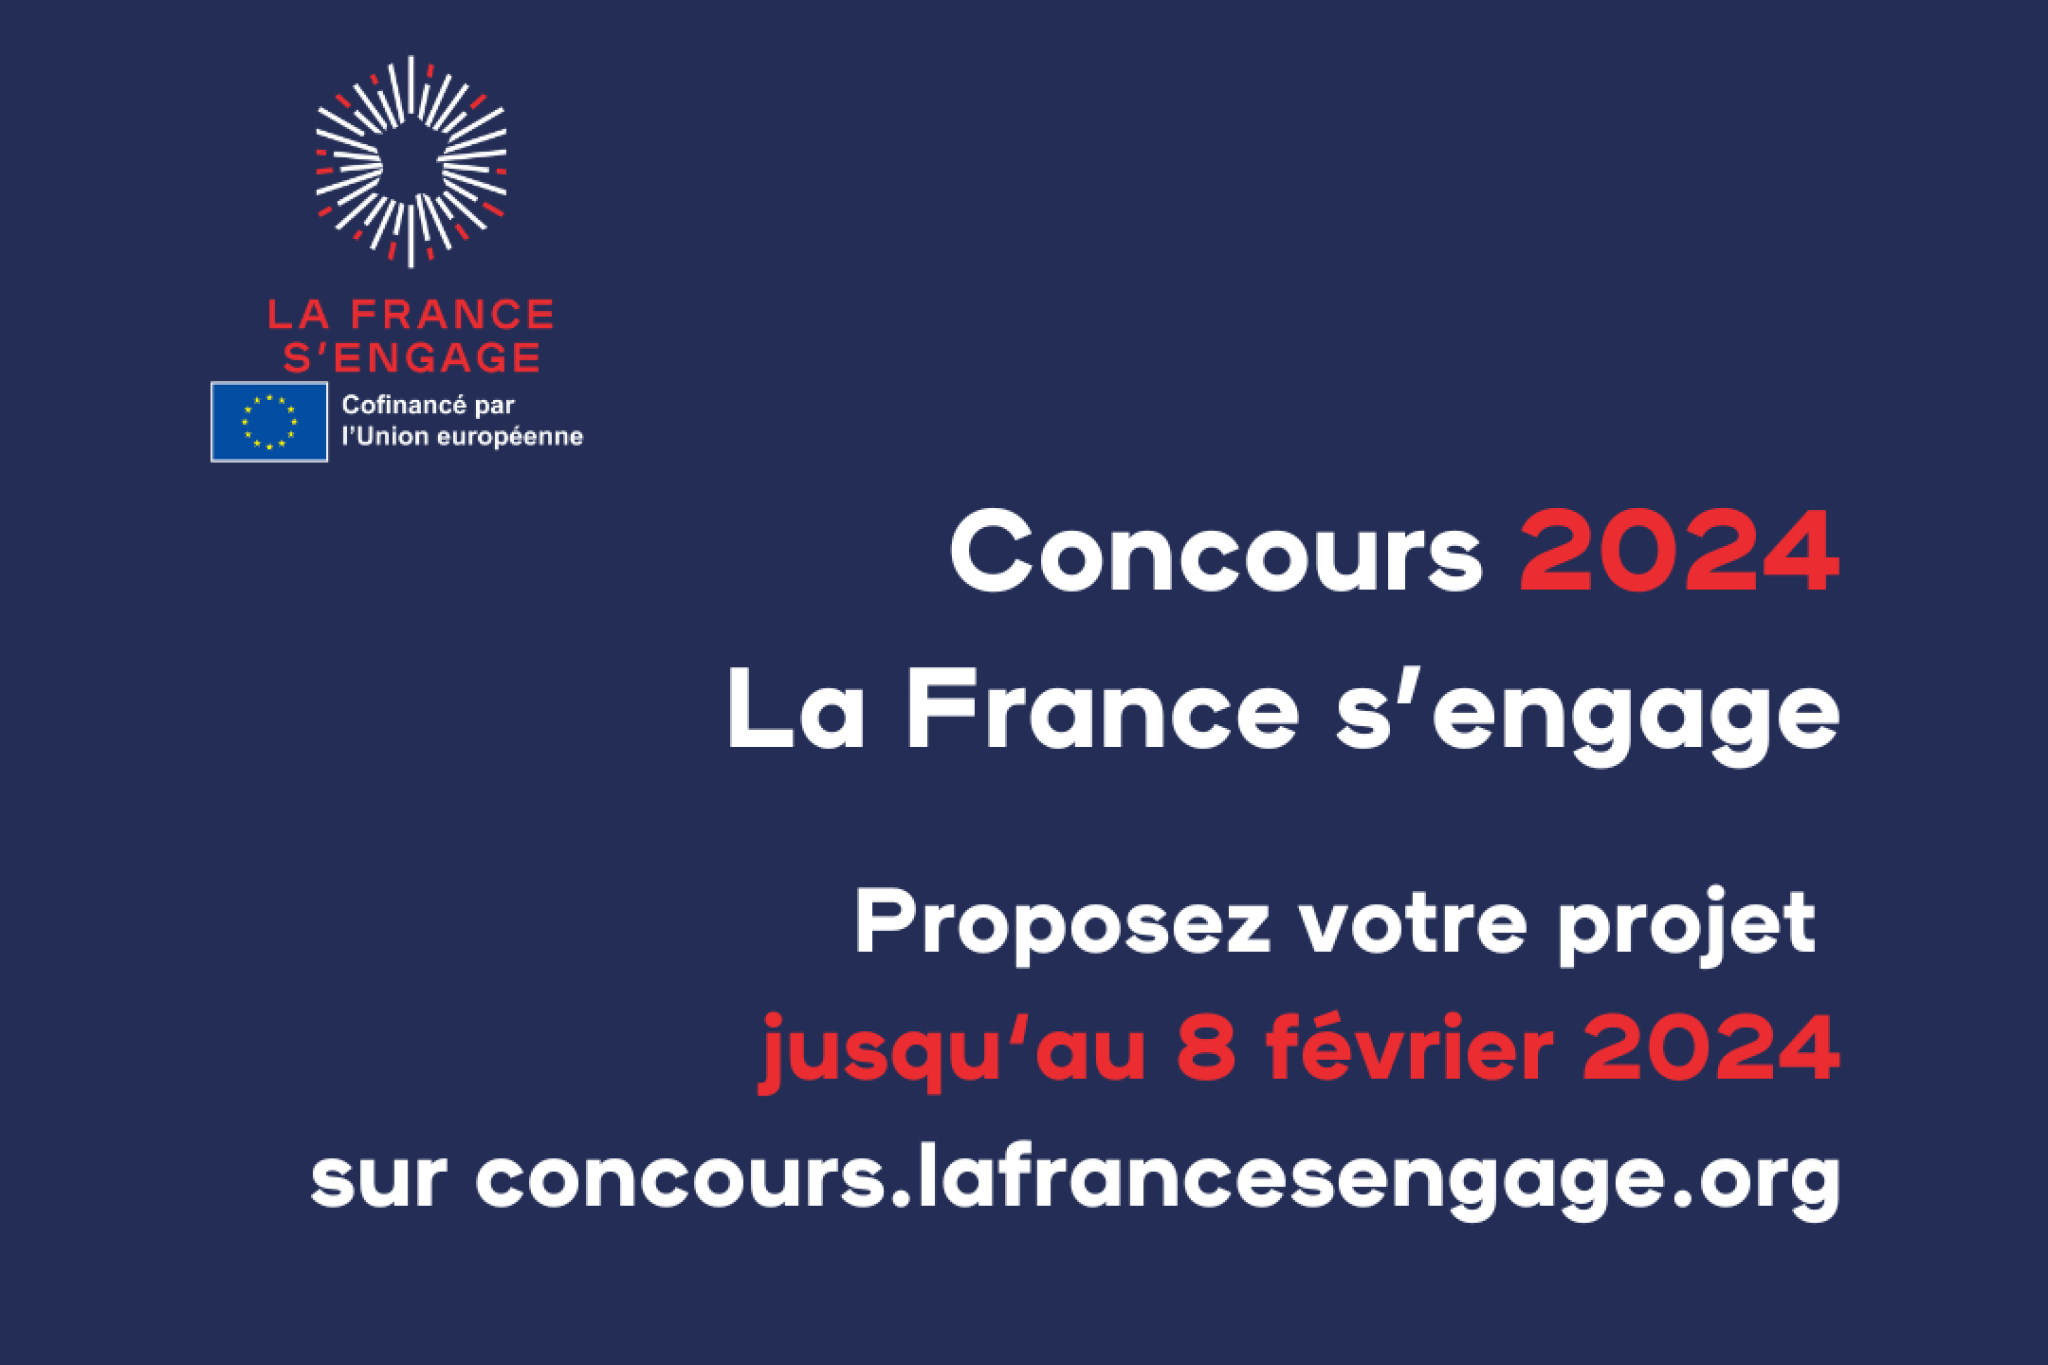 La France s’engage lance son concours annuel ! 